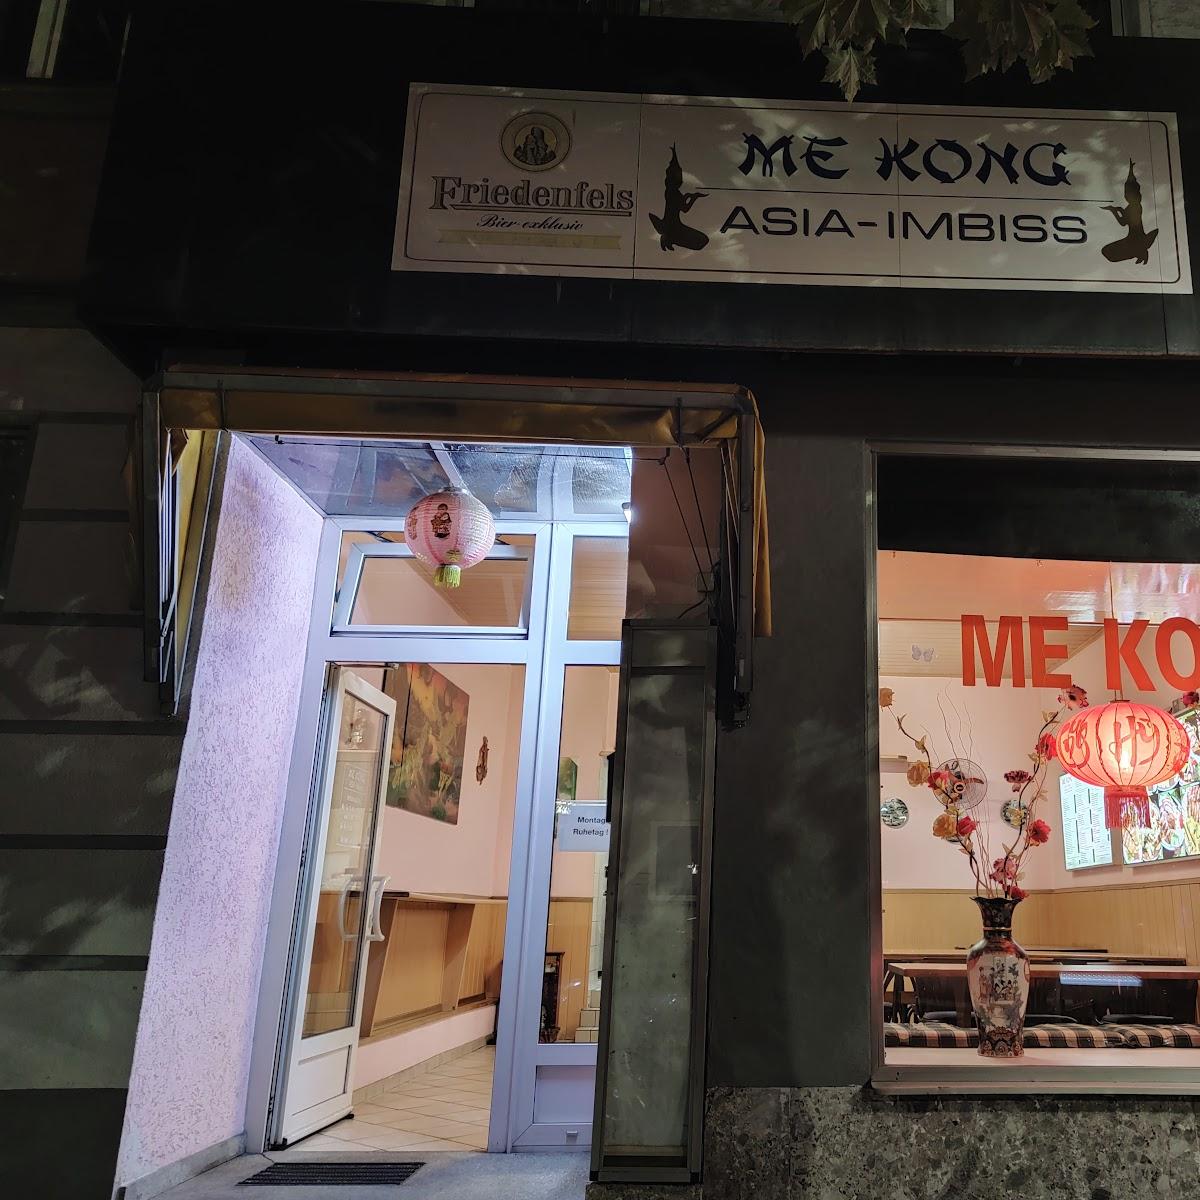 Restaurant "Me Kong Asia Imbiss" in Weiden in der Oberpfalz